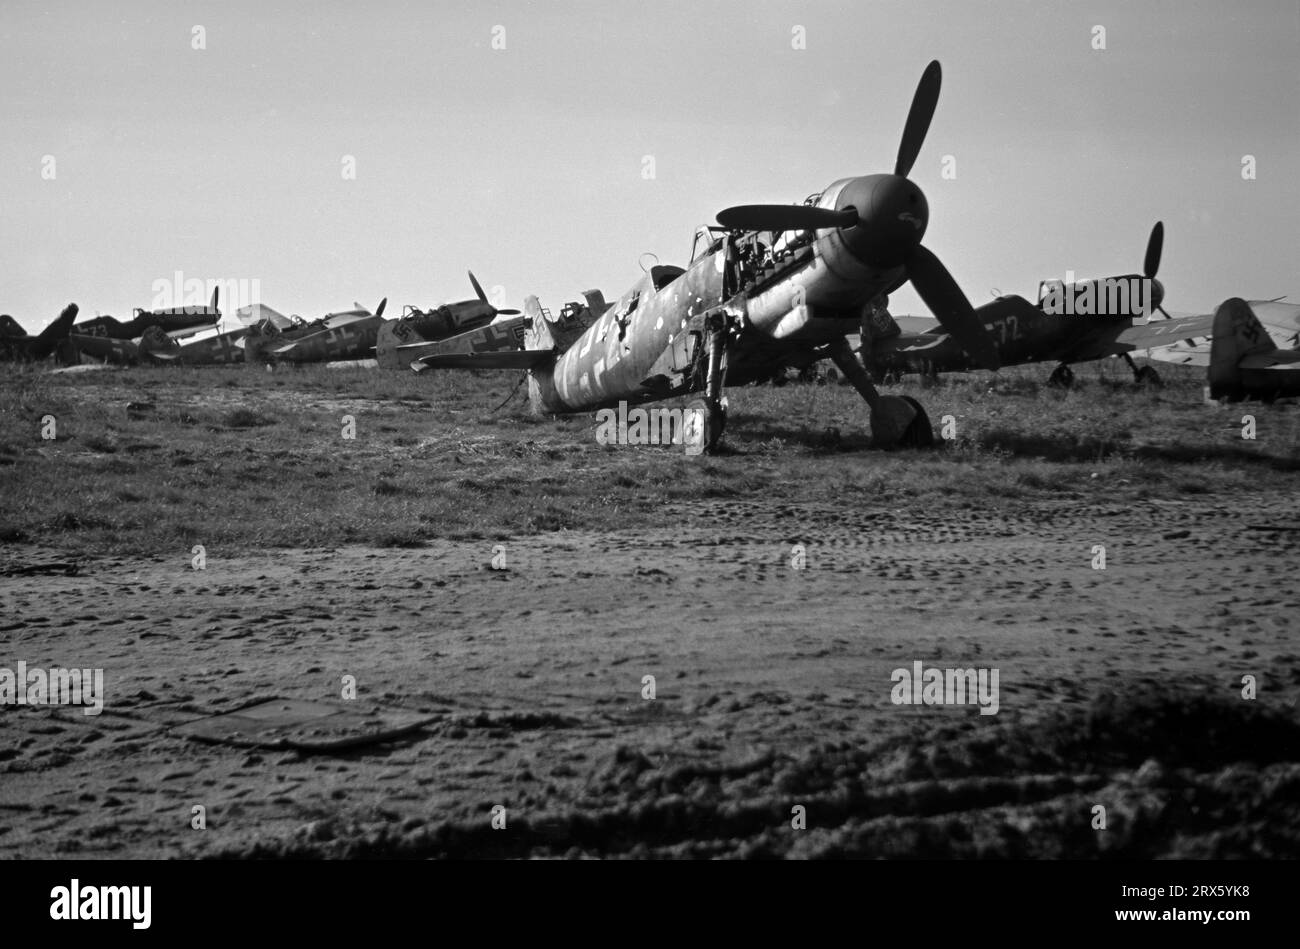 Dégâts des bombes Hangars de la Luftwaffe avions / usine aéronautique endommagée / raids aériens alliés pendant la Seconde Guerre mondiale - 1944 / 1945 - Messershmitt BF 109 E / G / 109E / 109G. Banque D'Images